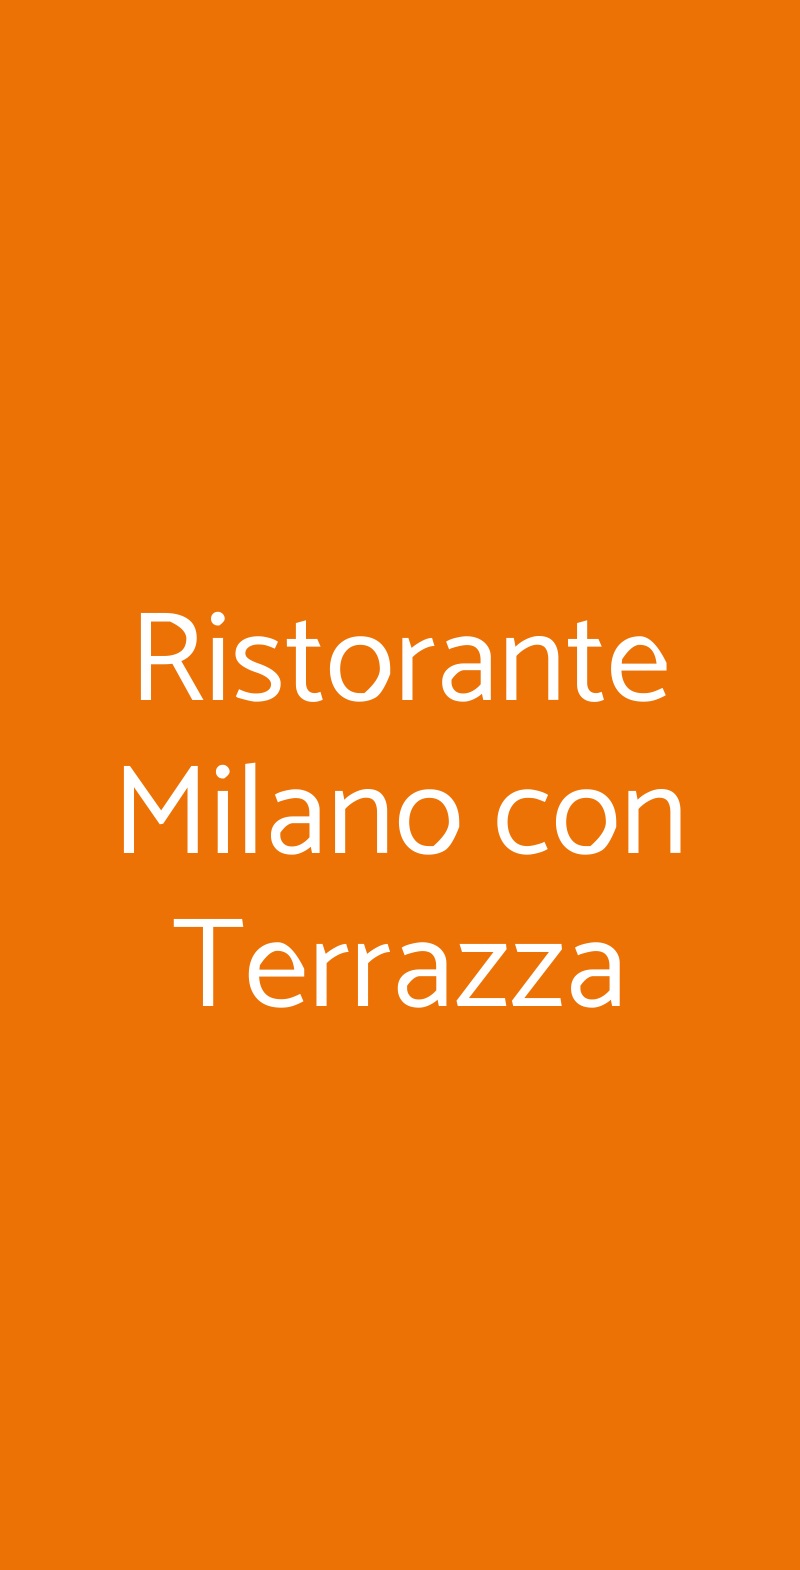 Ristorante Milano con Terrazza Borgo a Mozzano menù 1 pagina